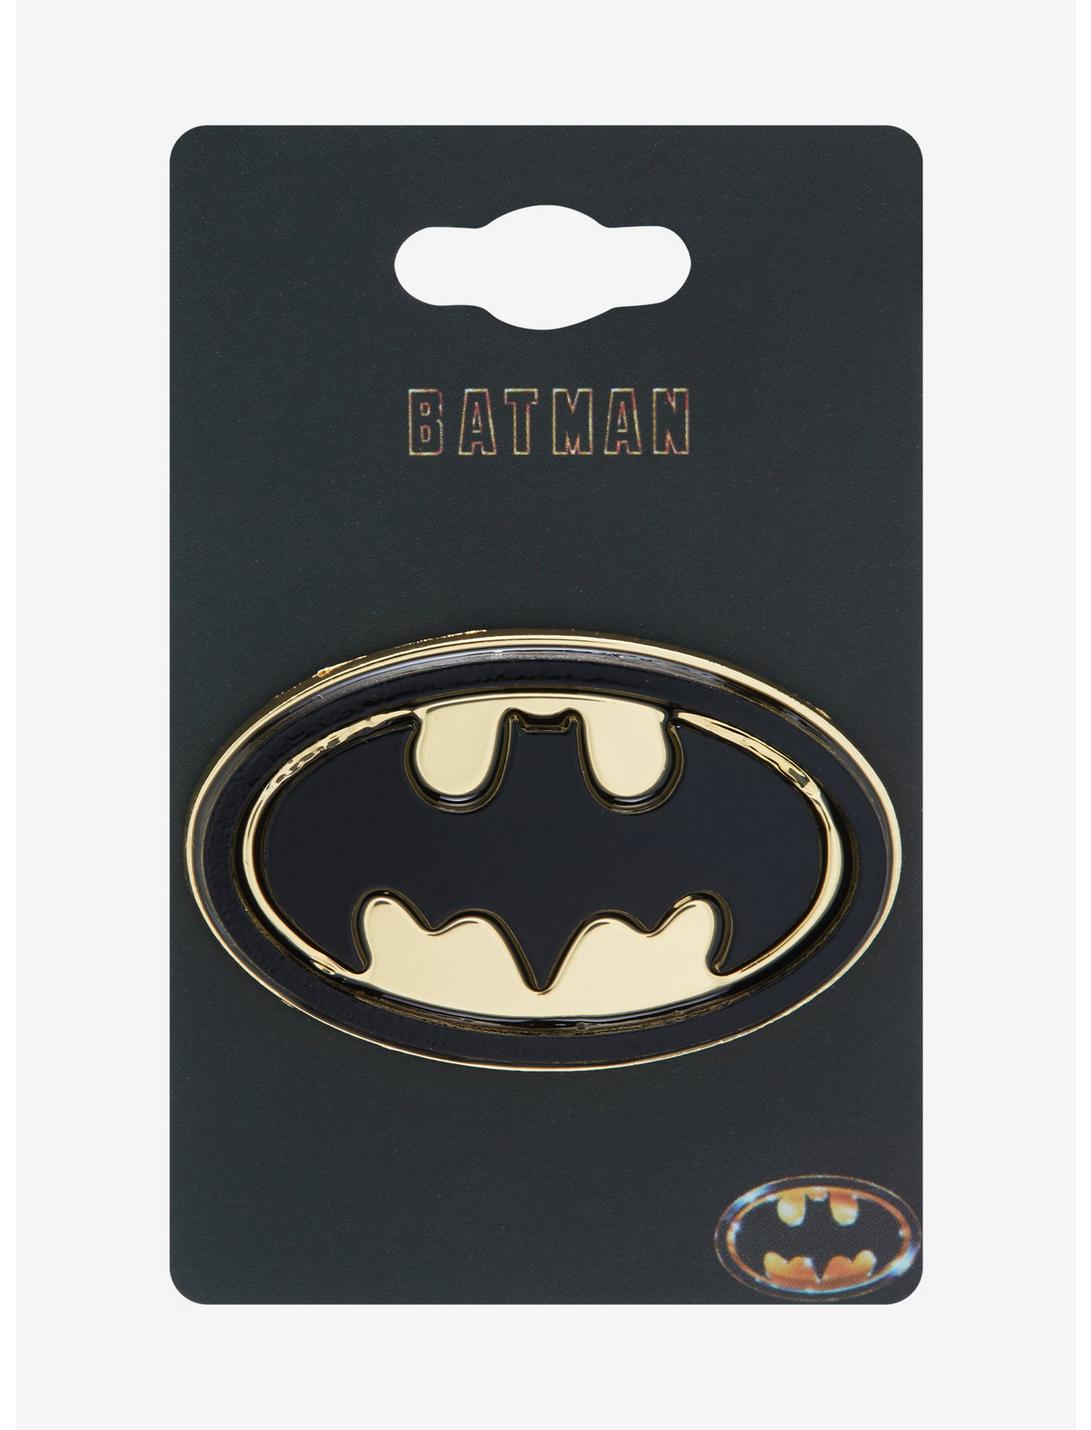 DC Comics Batman Symbol Enamel Pin - BoxLunch Exclusive, , hi-res